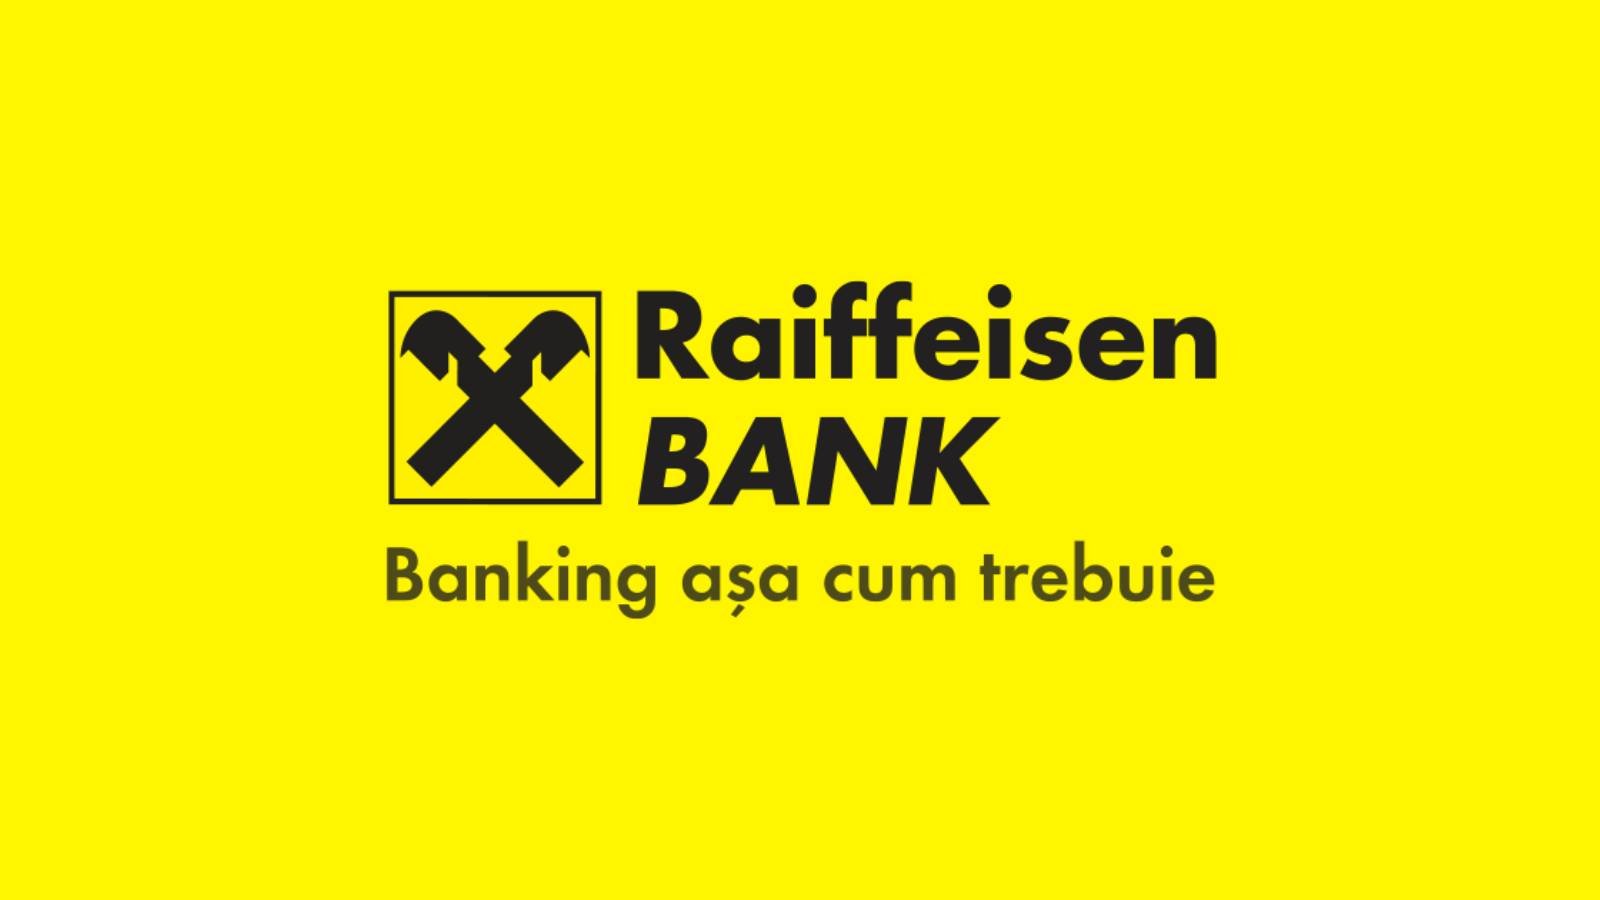 Raiffeisen Bank Romaniassa sovellettujen kiireellisten toimenpiteiden vaikutus